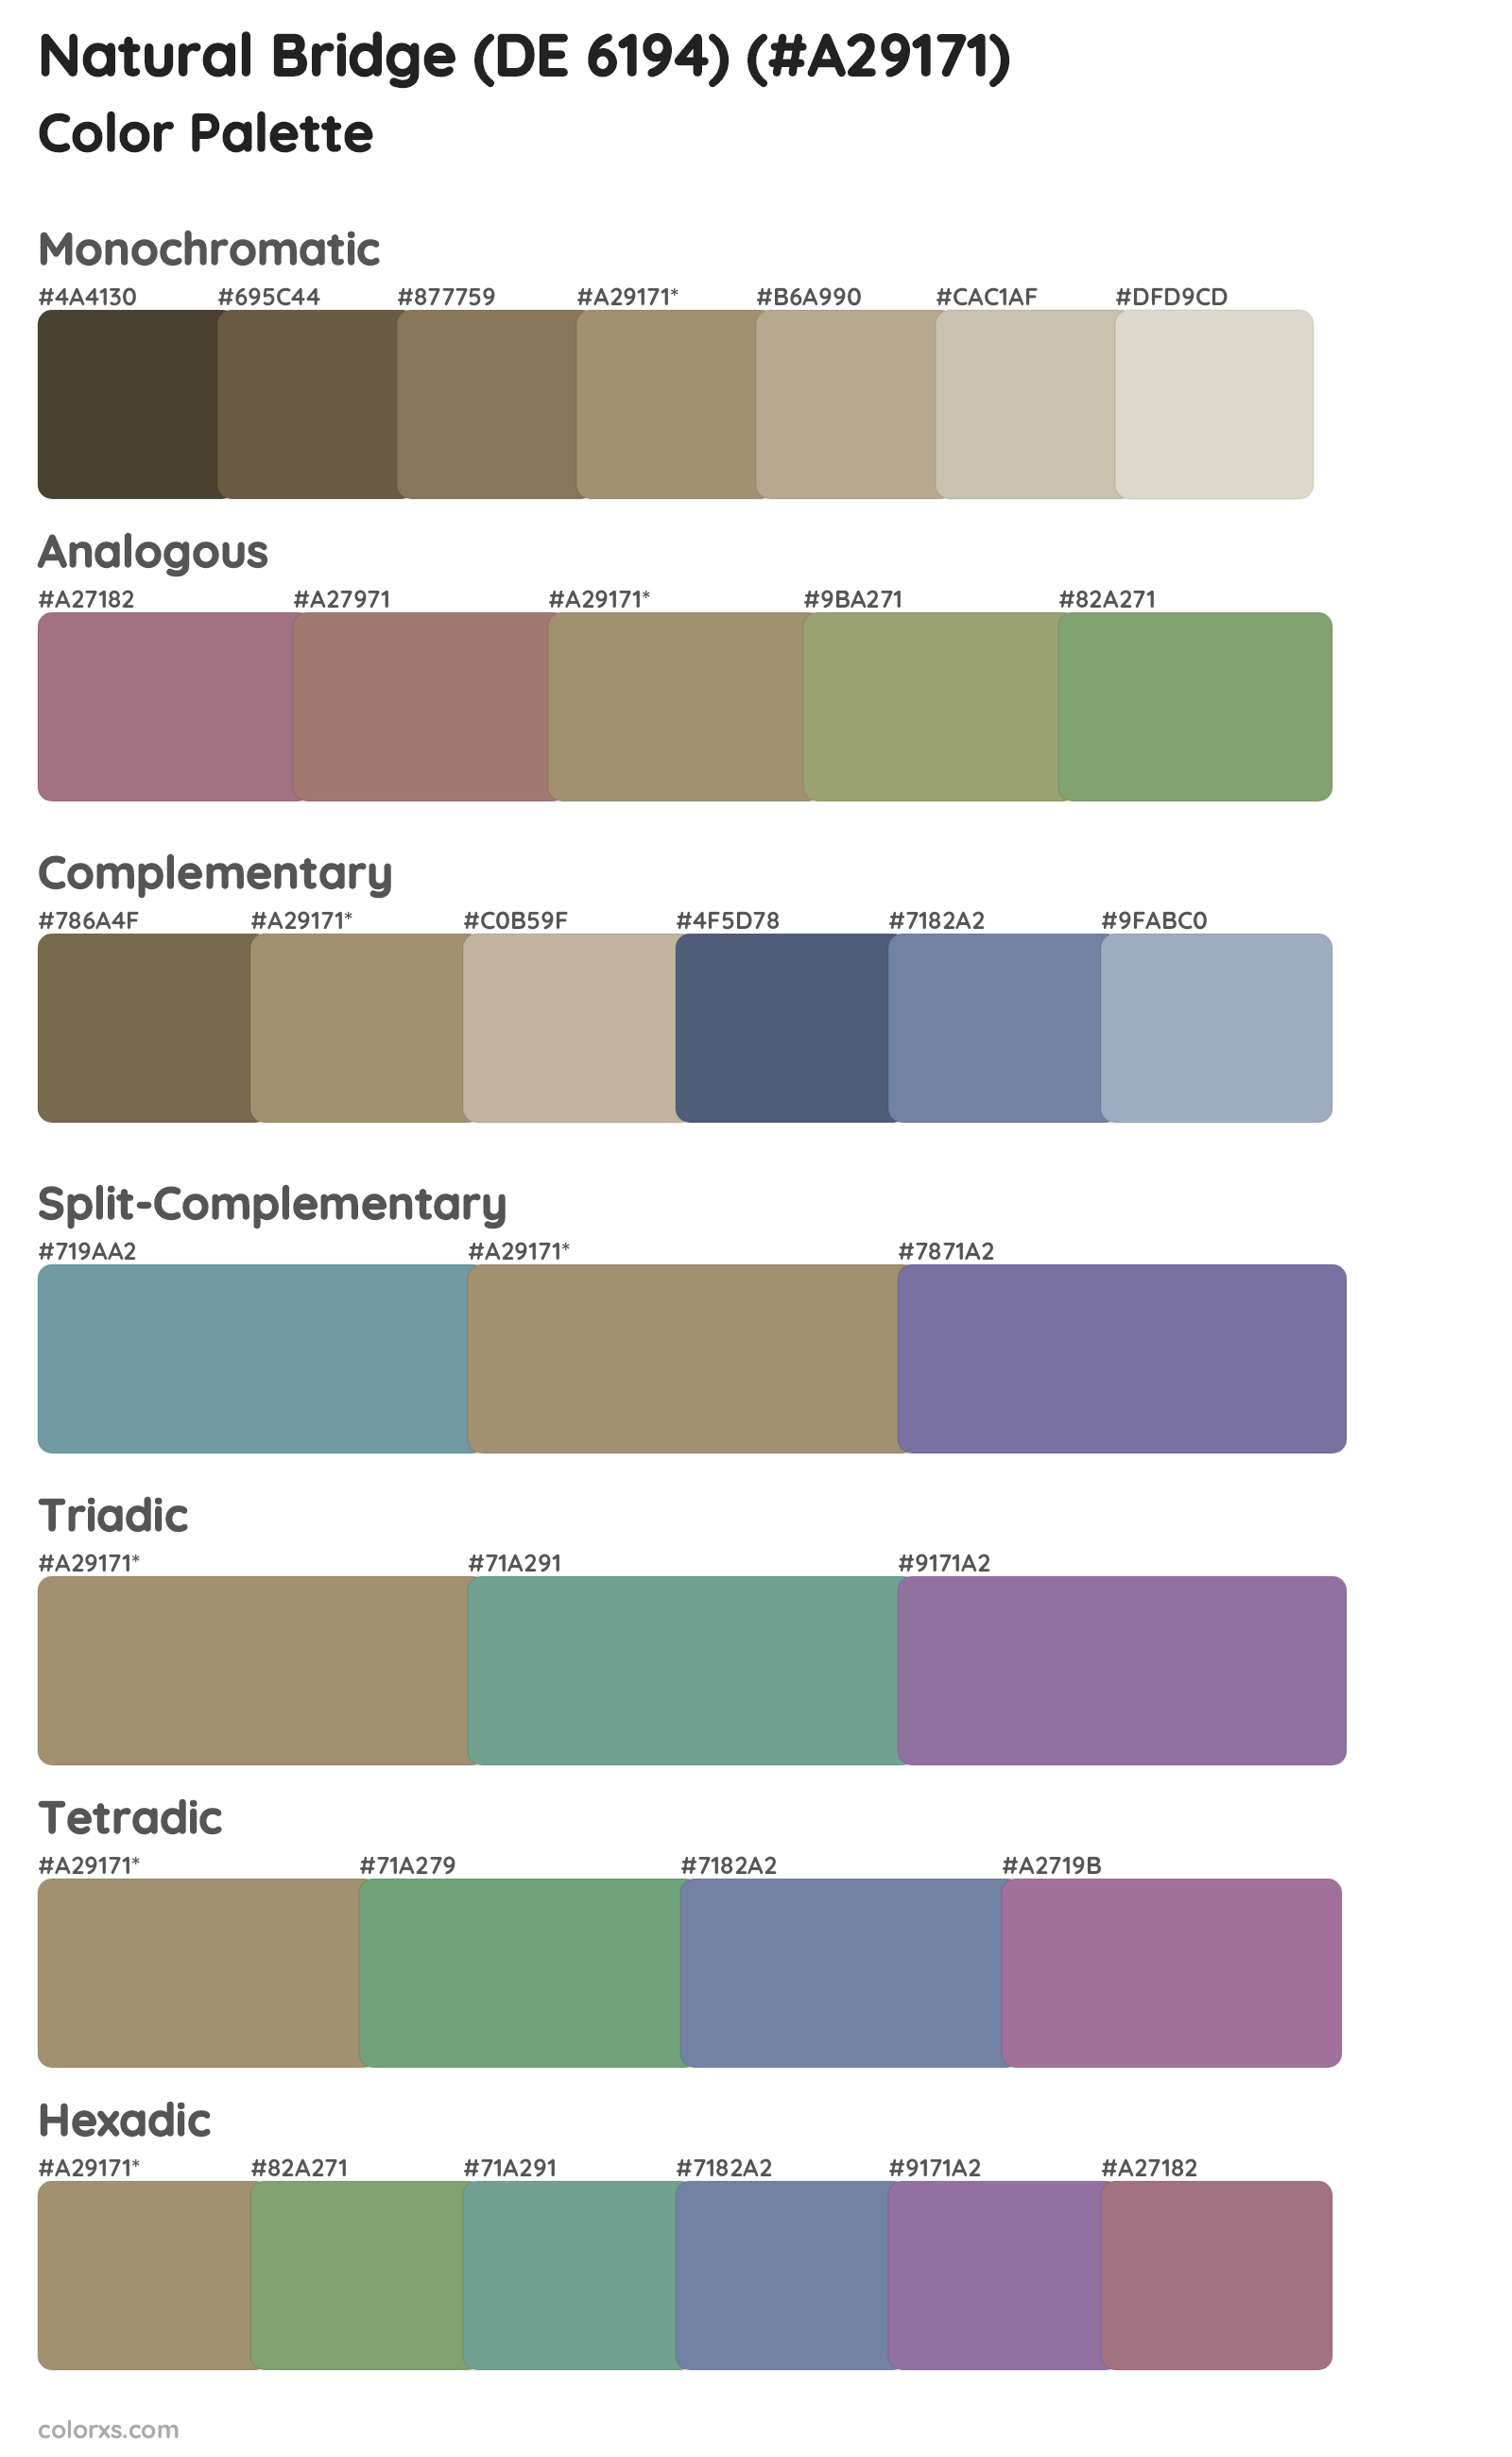 Natural Bridge (DE 6194) Color Scheme Palettes